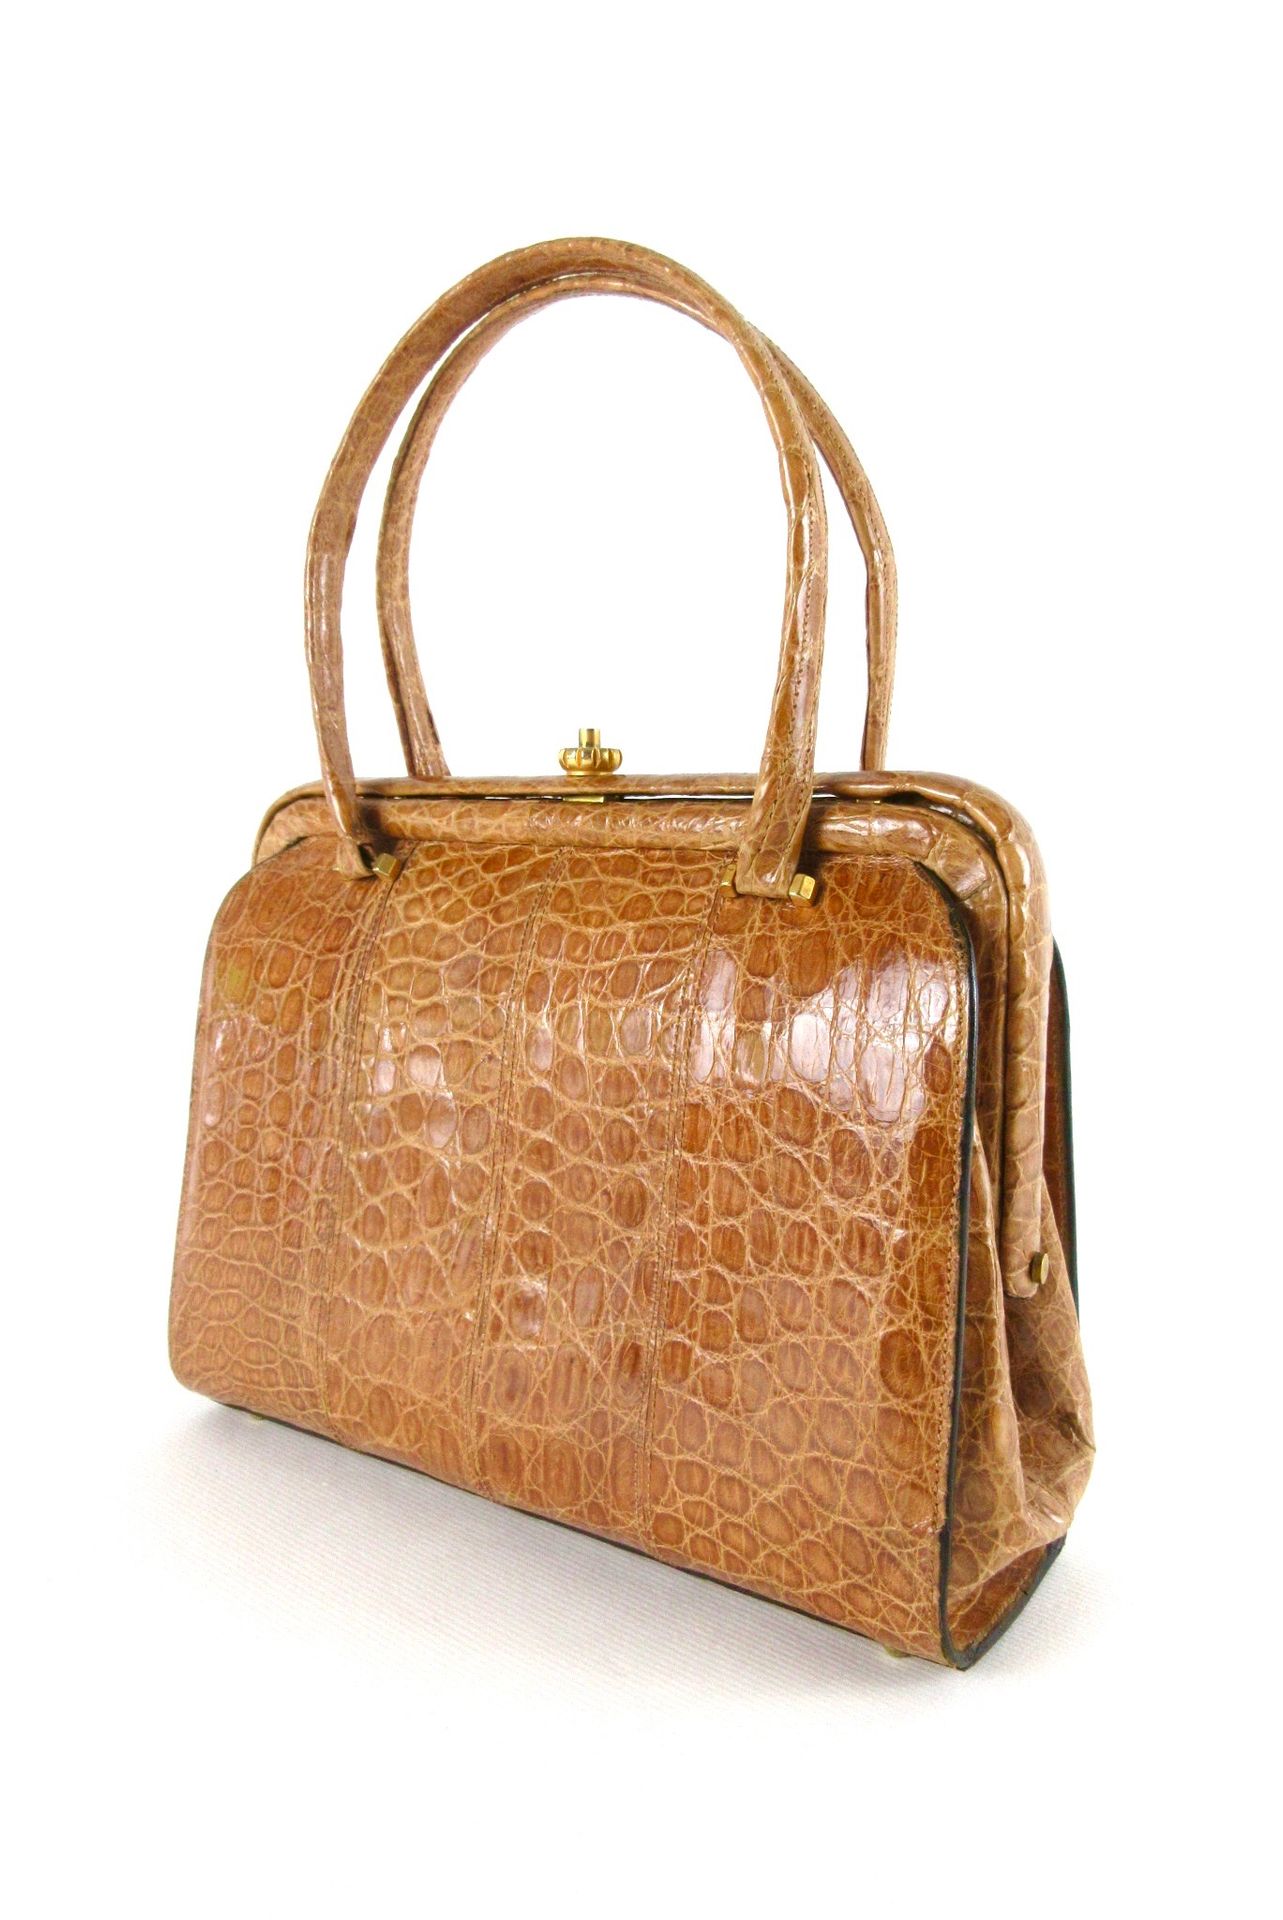 Null Petit sac en cuir exotique marron clair, structure rigide à deux anses, les&hellip;